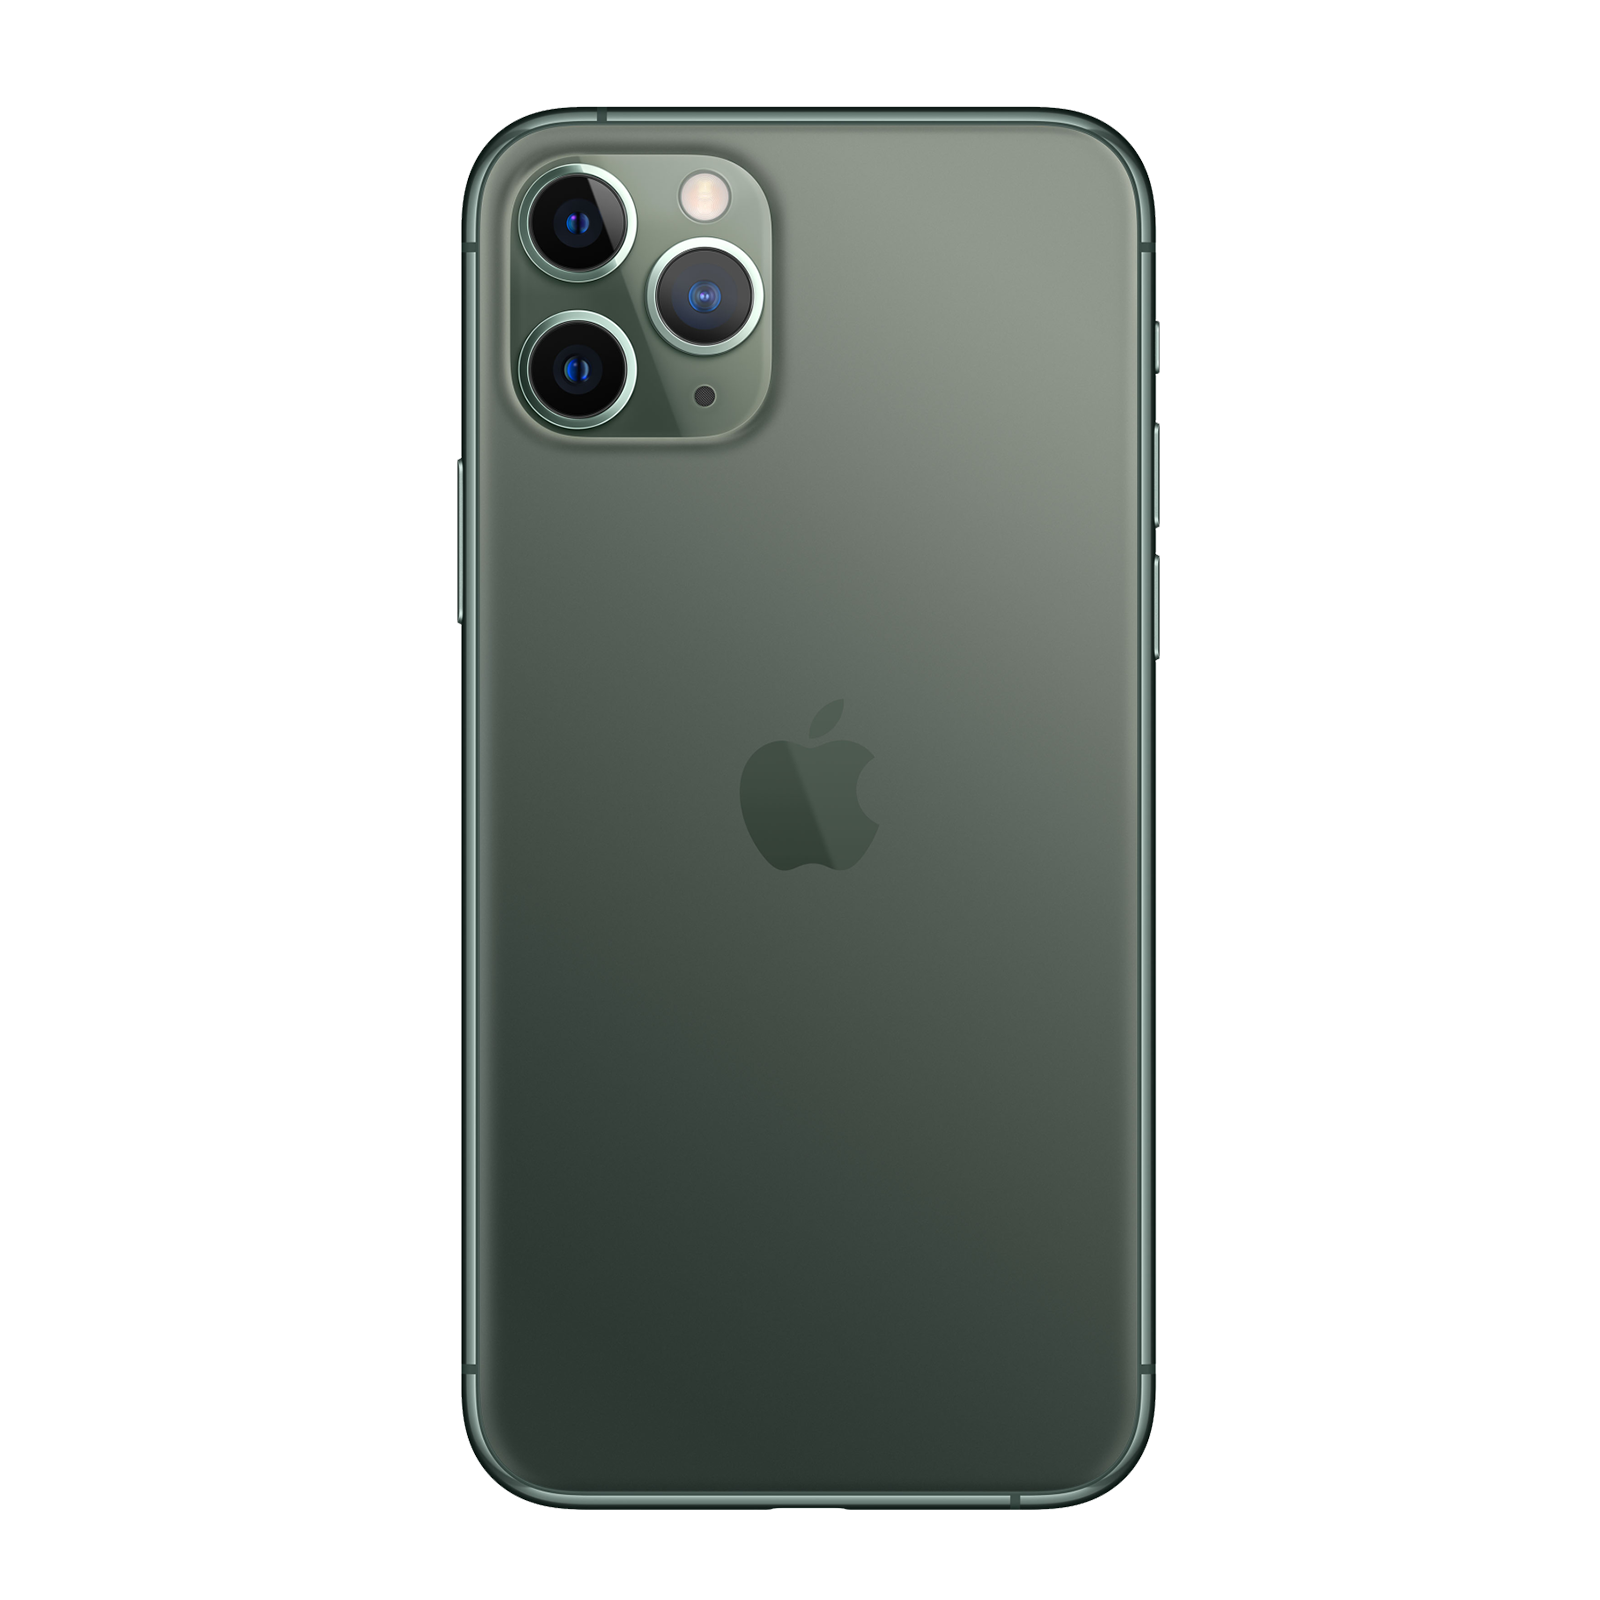 iPhone 11 Pro Max 512 Go - Vert Nuit - Débloqué - Etat correct